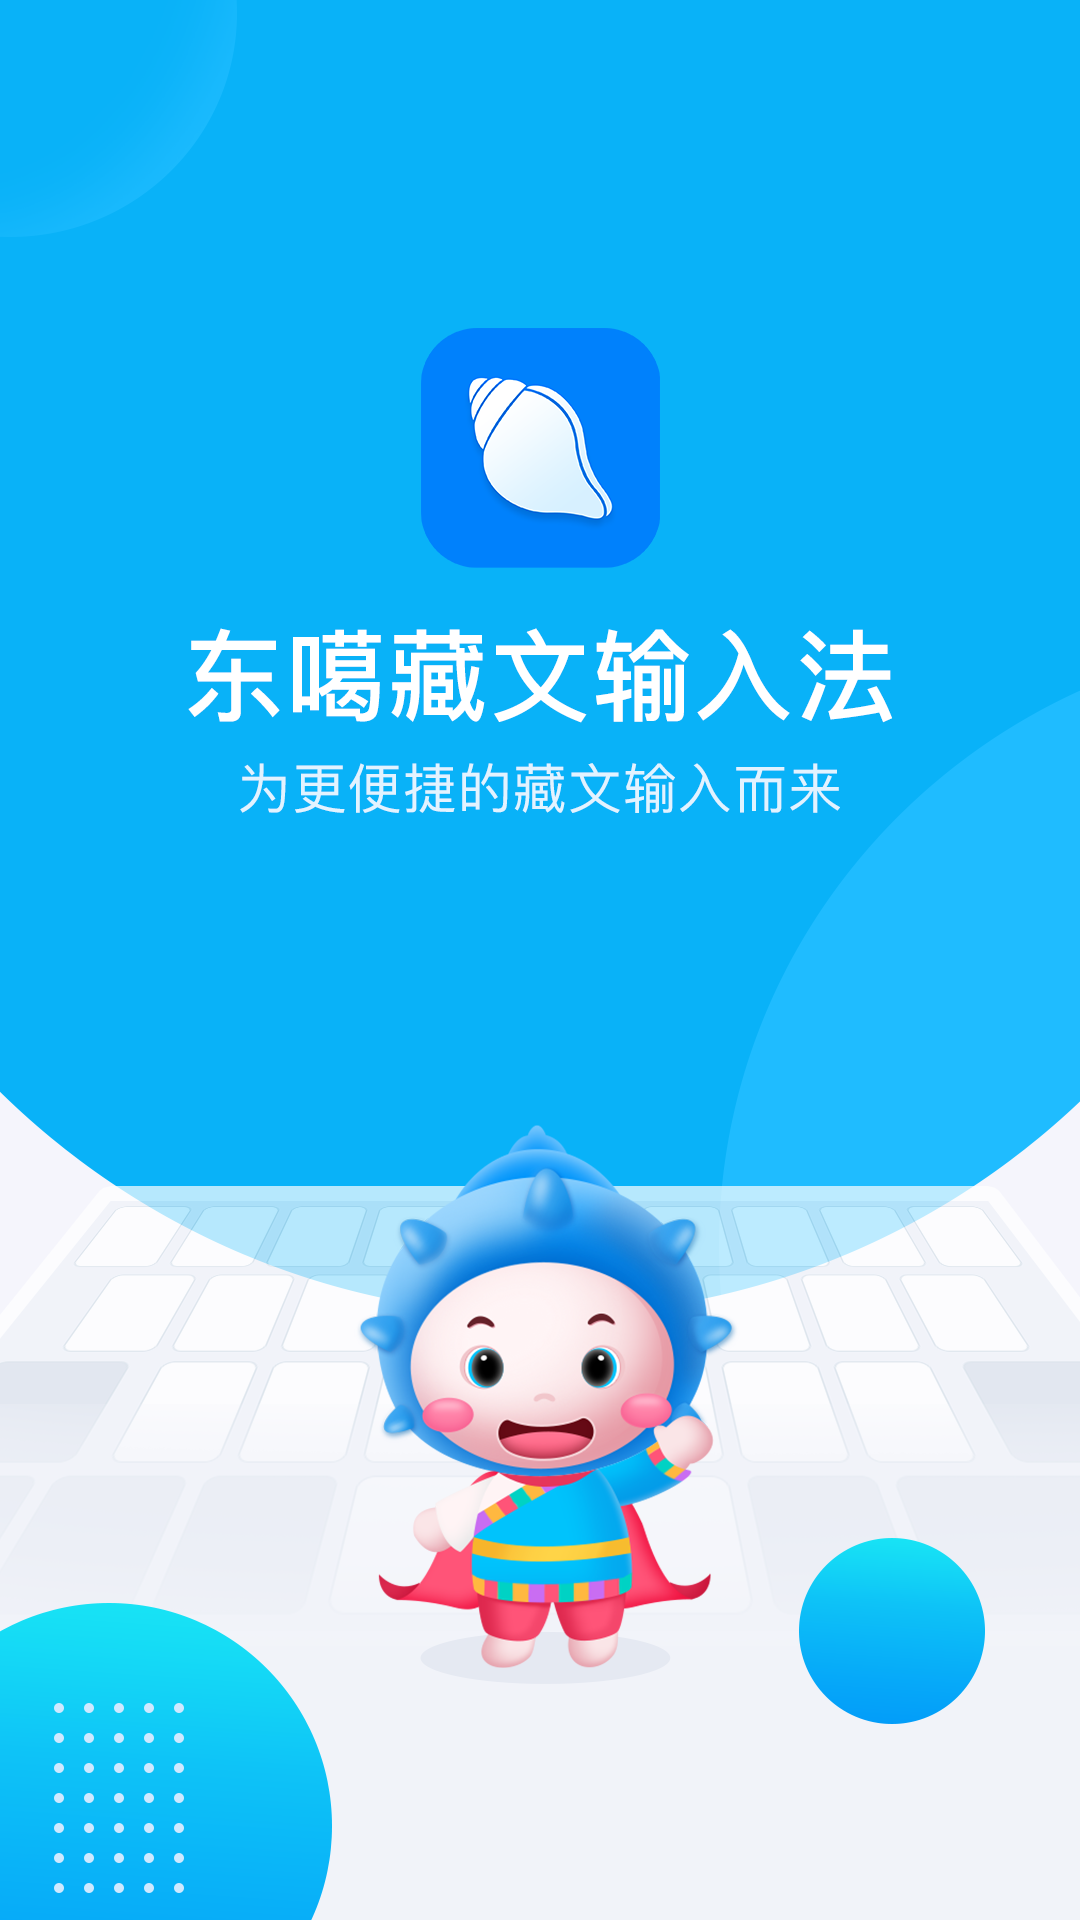 东噶藏文输入法app截图(4)